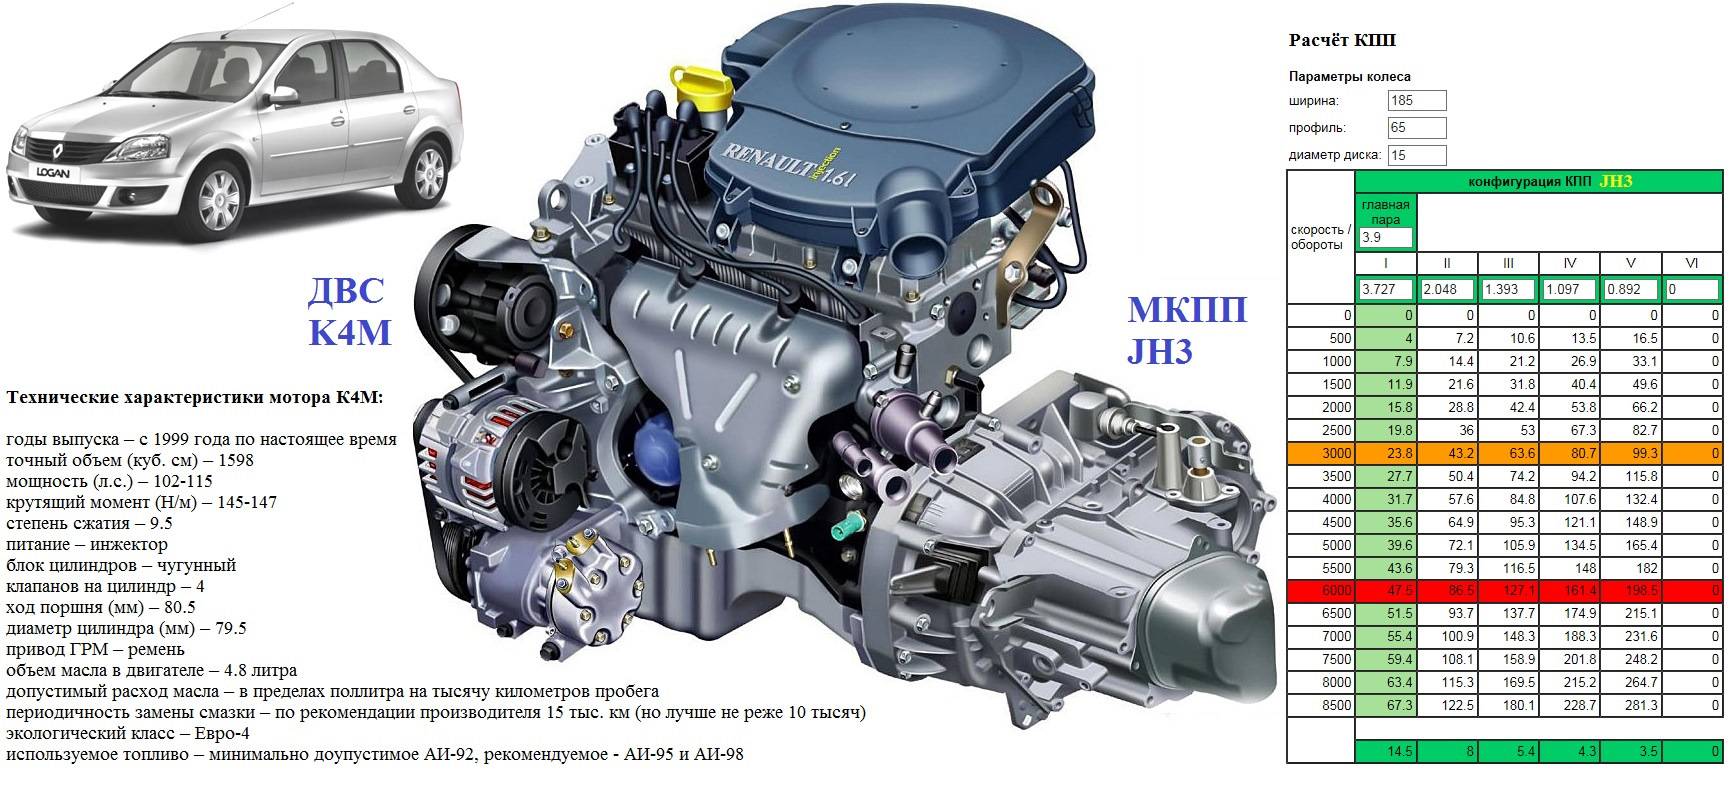 Французская классика — двигатель Renault K4M